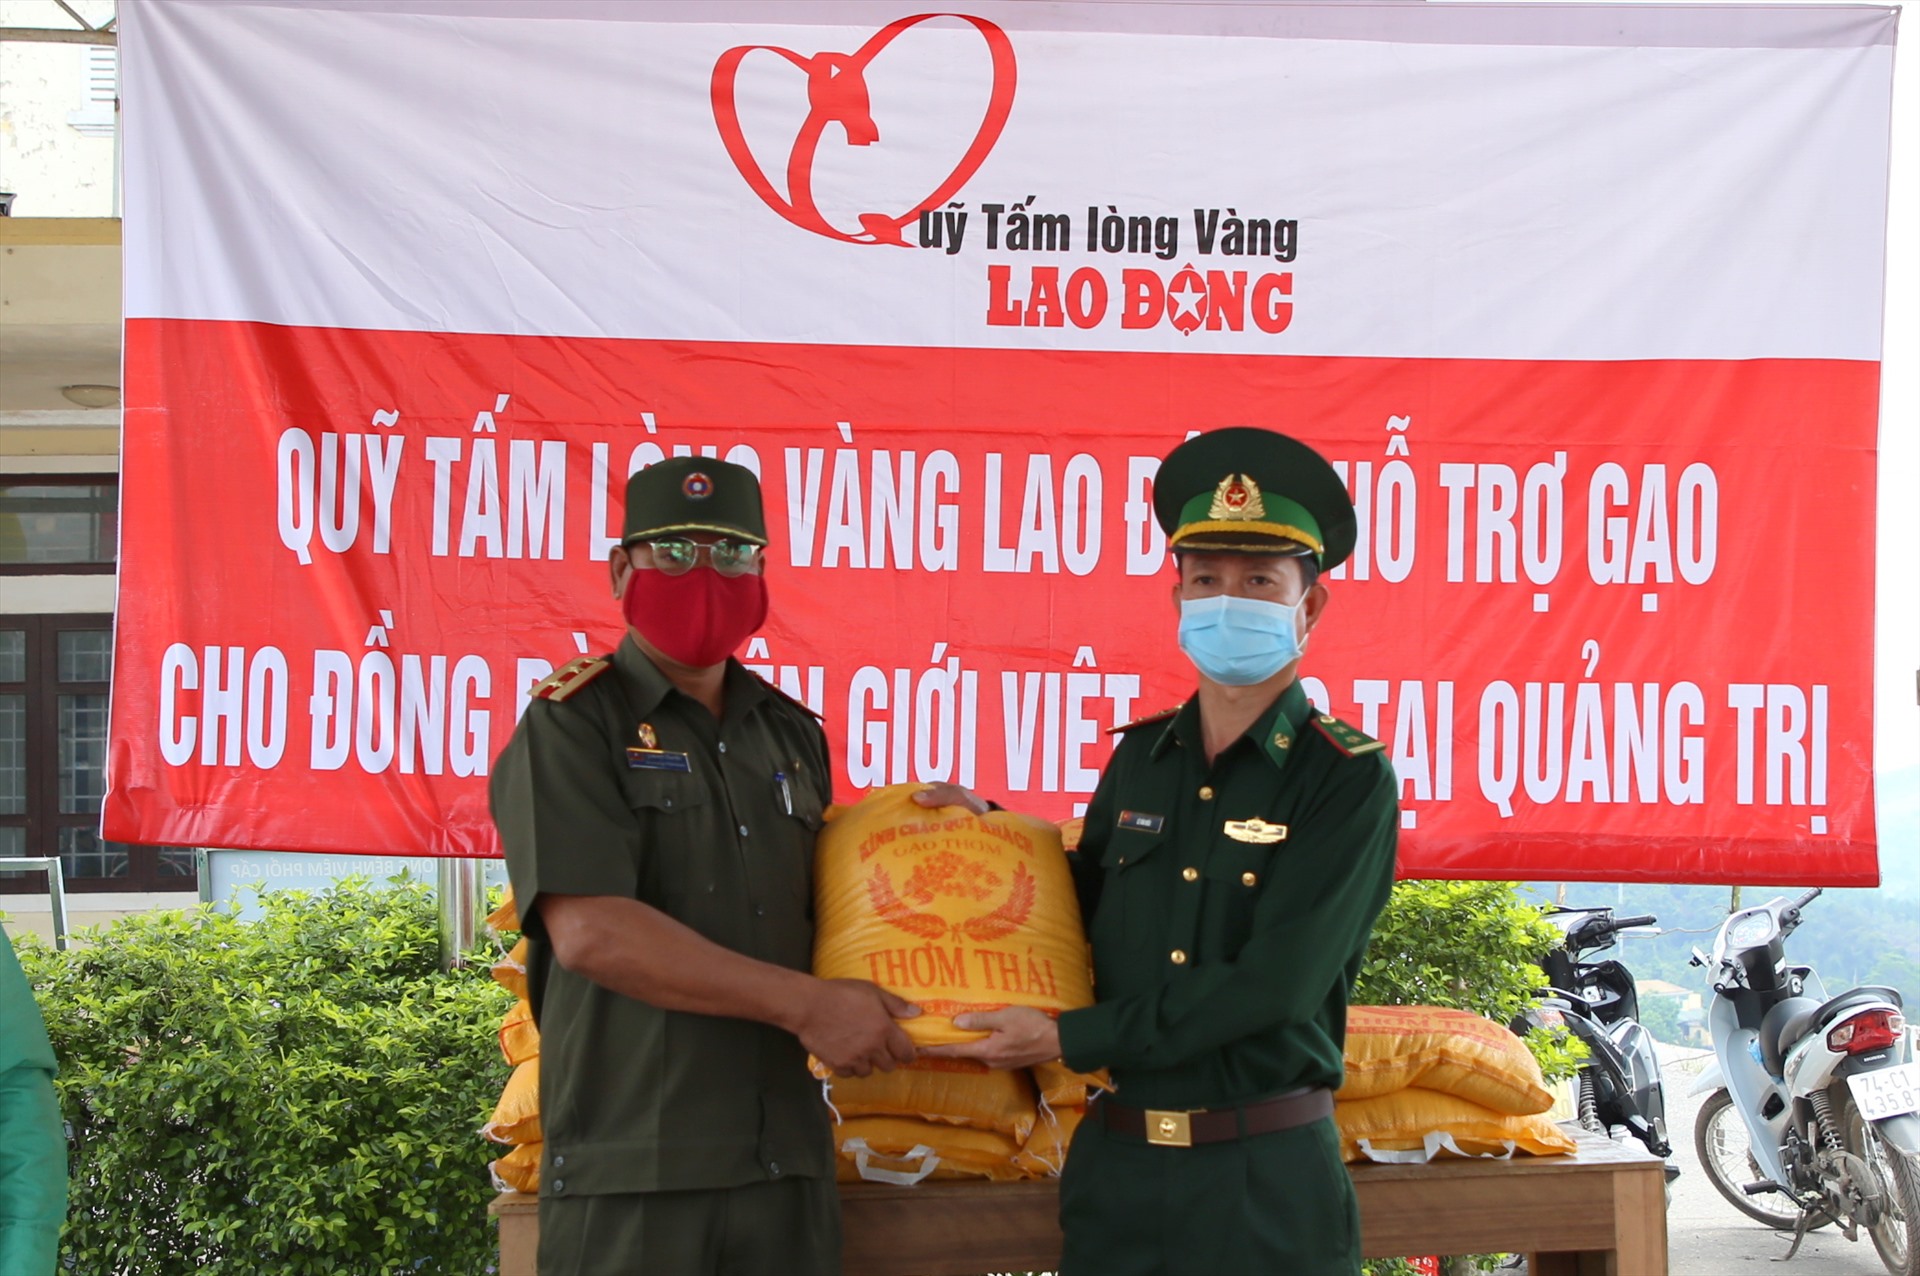 Sau khi tiếp nhận gạo của Quỹ TLV hỗ trợ, Đồn Biên phòng Cửa khẩu Quốc tế La Lay đã kịp thời hỗ trợ cho người dân địa phương và nước bạn Lào. Ảnh: Hưng Thơ.